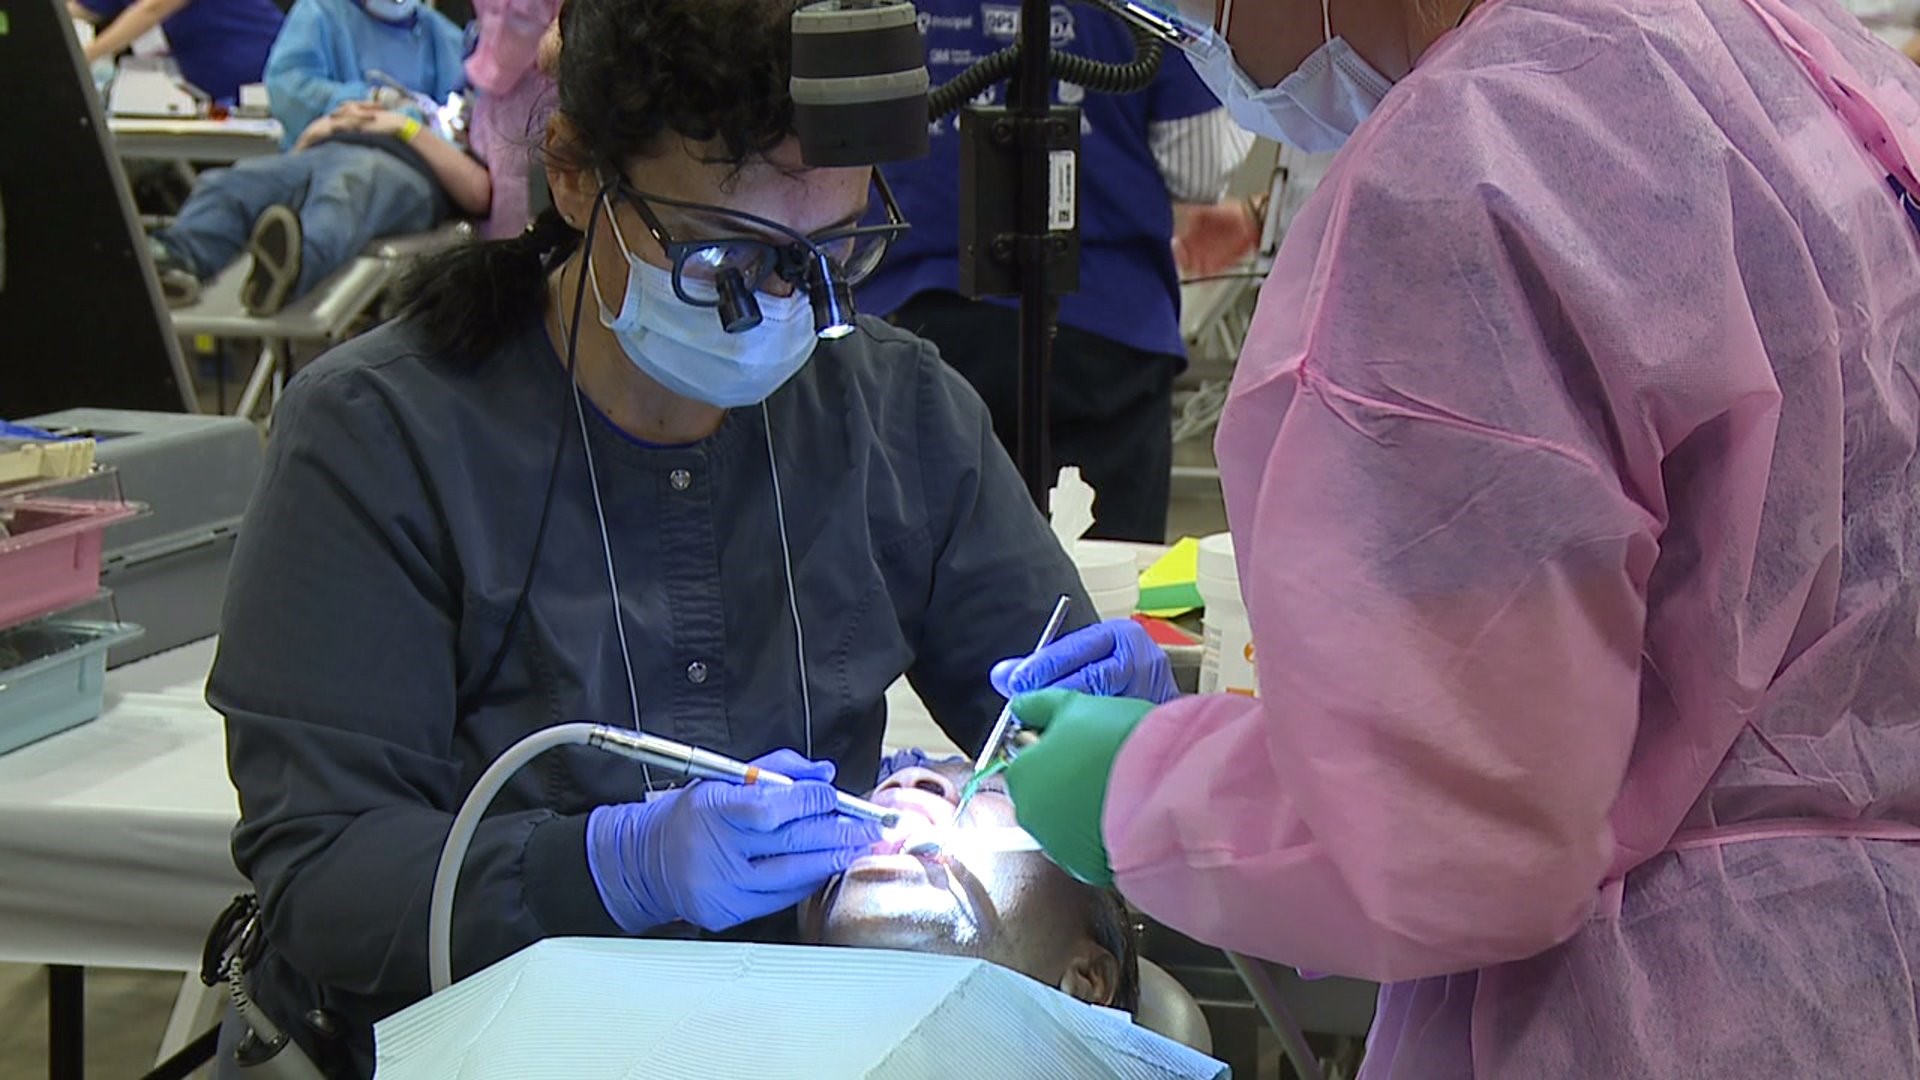 Free dental clinic draws hundreds to Davenport